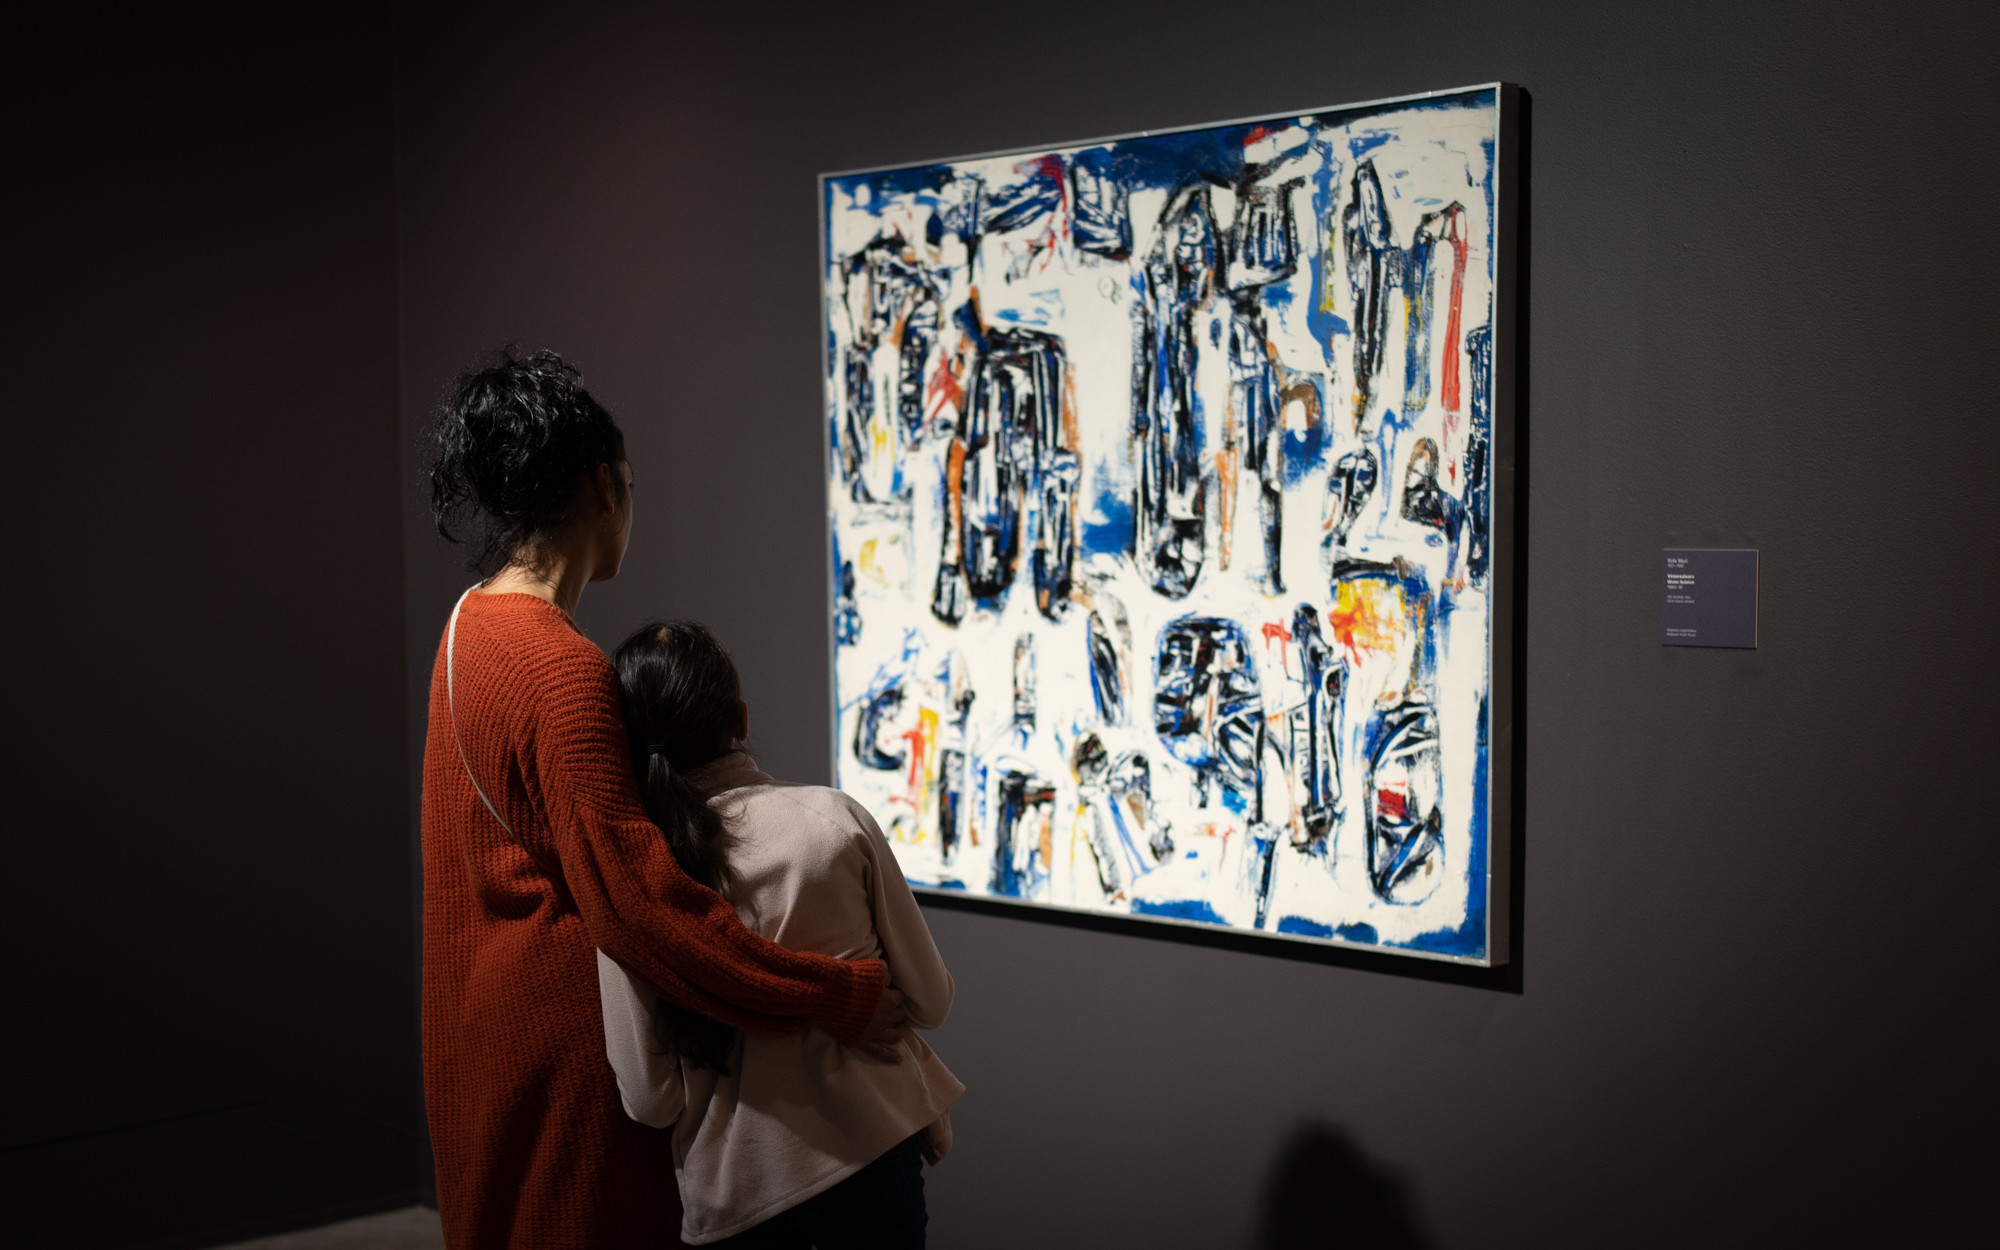 Ei vaksen kvinne og ei jente studerer eit abstrakt måleri i kvitt, blått og svart.